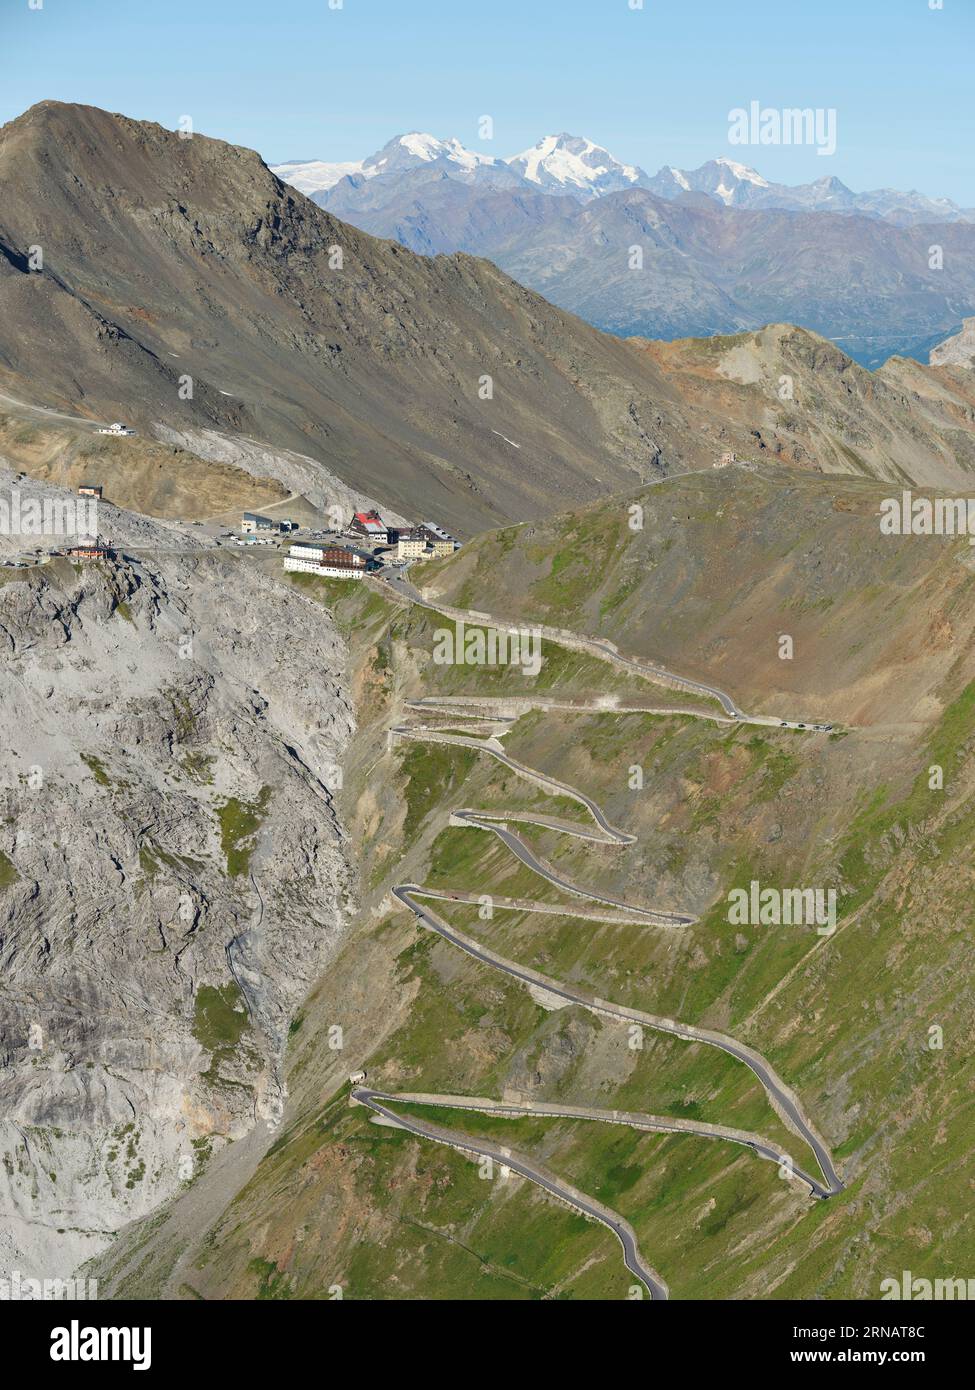 LUFTAUFNAHME. Stilfserjoch (Italiens höchster Pass mit 2.757 m ü.d.M.) von Osten aus gesehen. Grenzen von Trentino-Südtirol (Foto) und Lombardei, Italien. Stockfoto